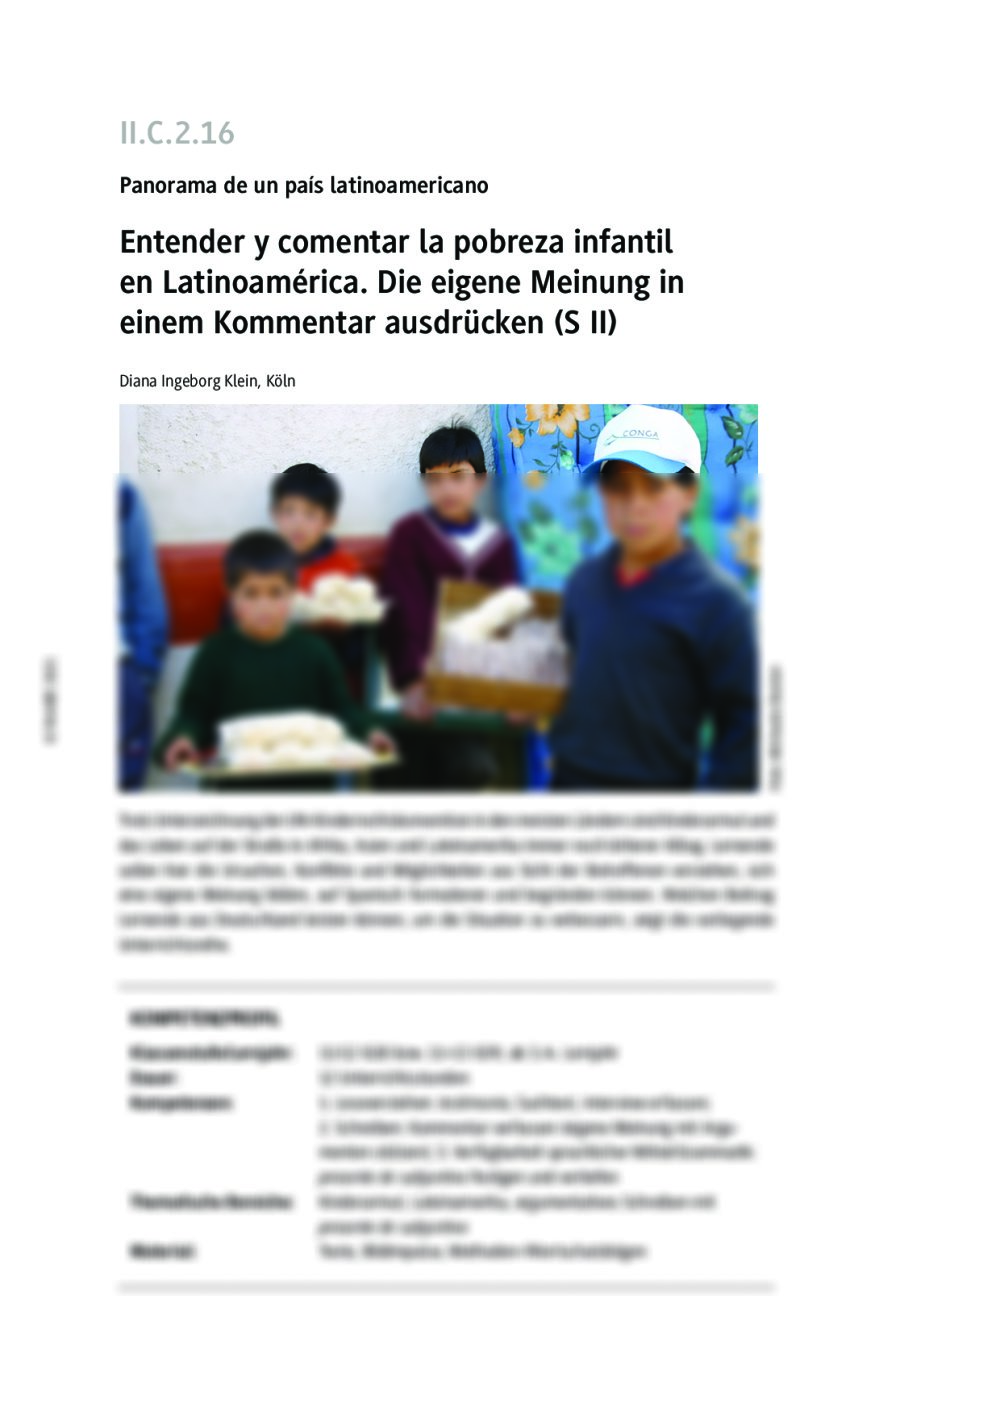 Entender y comentar la pobreza infantil en Latinoamérica - Seite 1